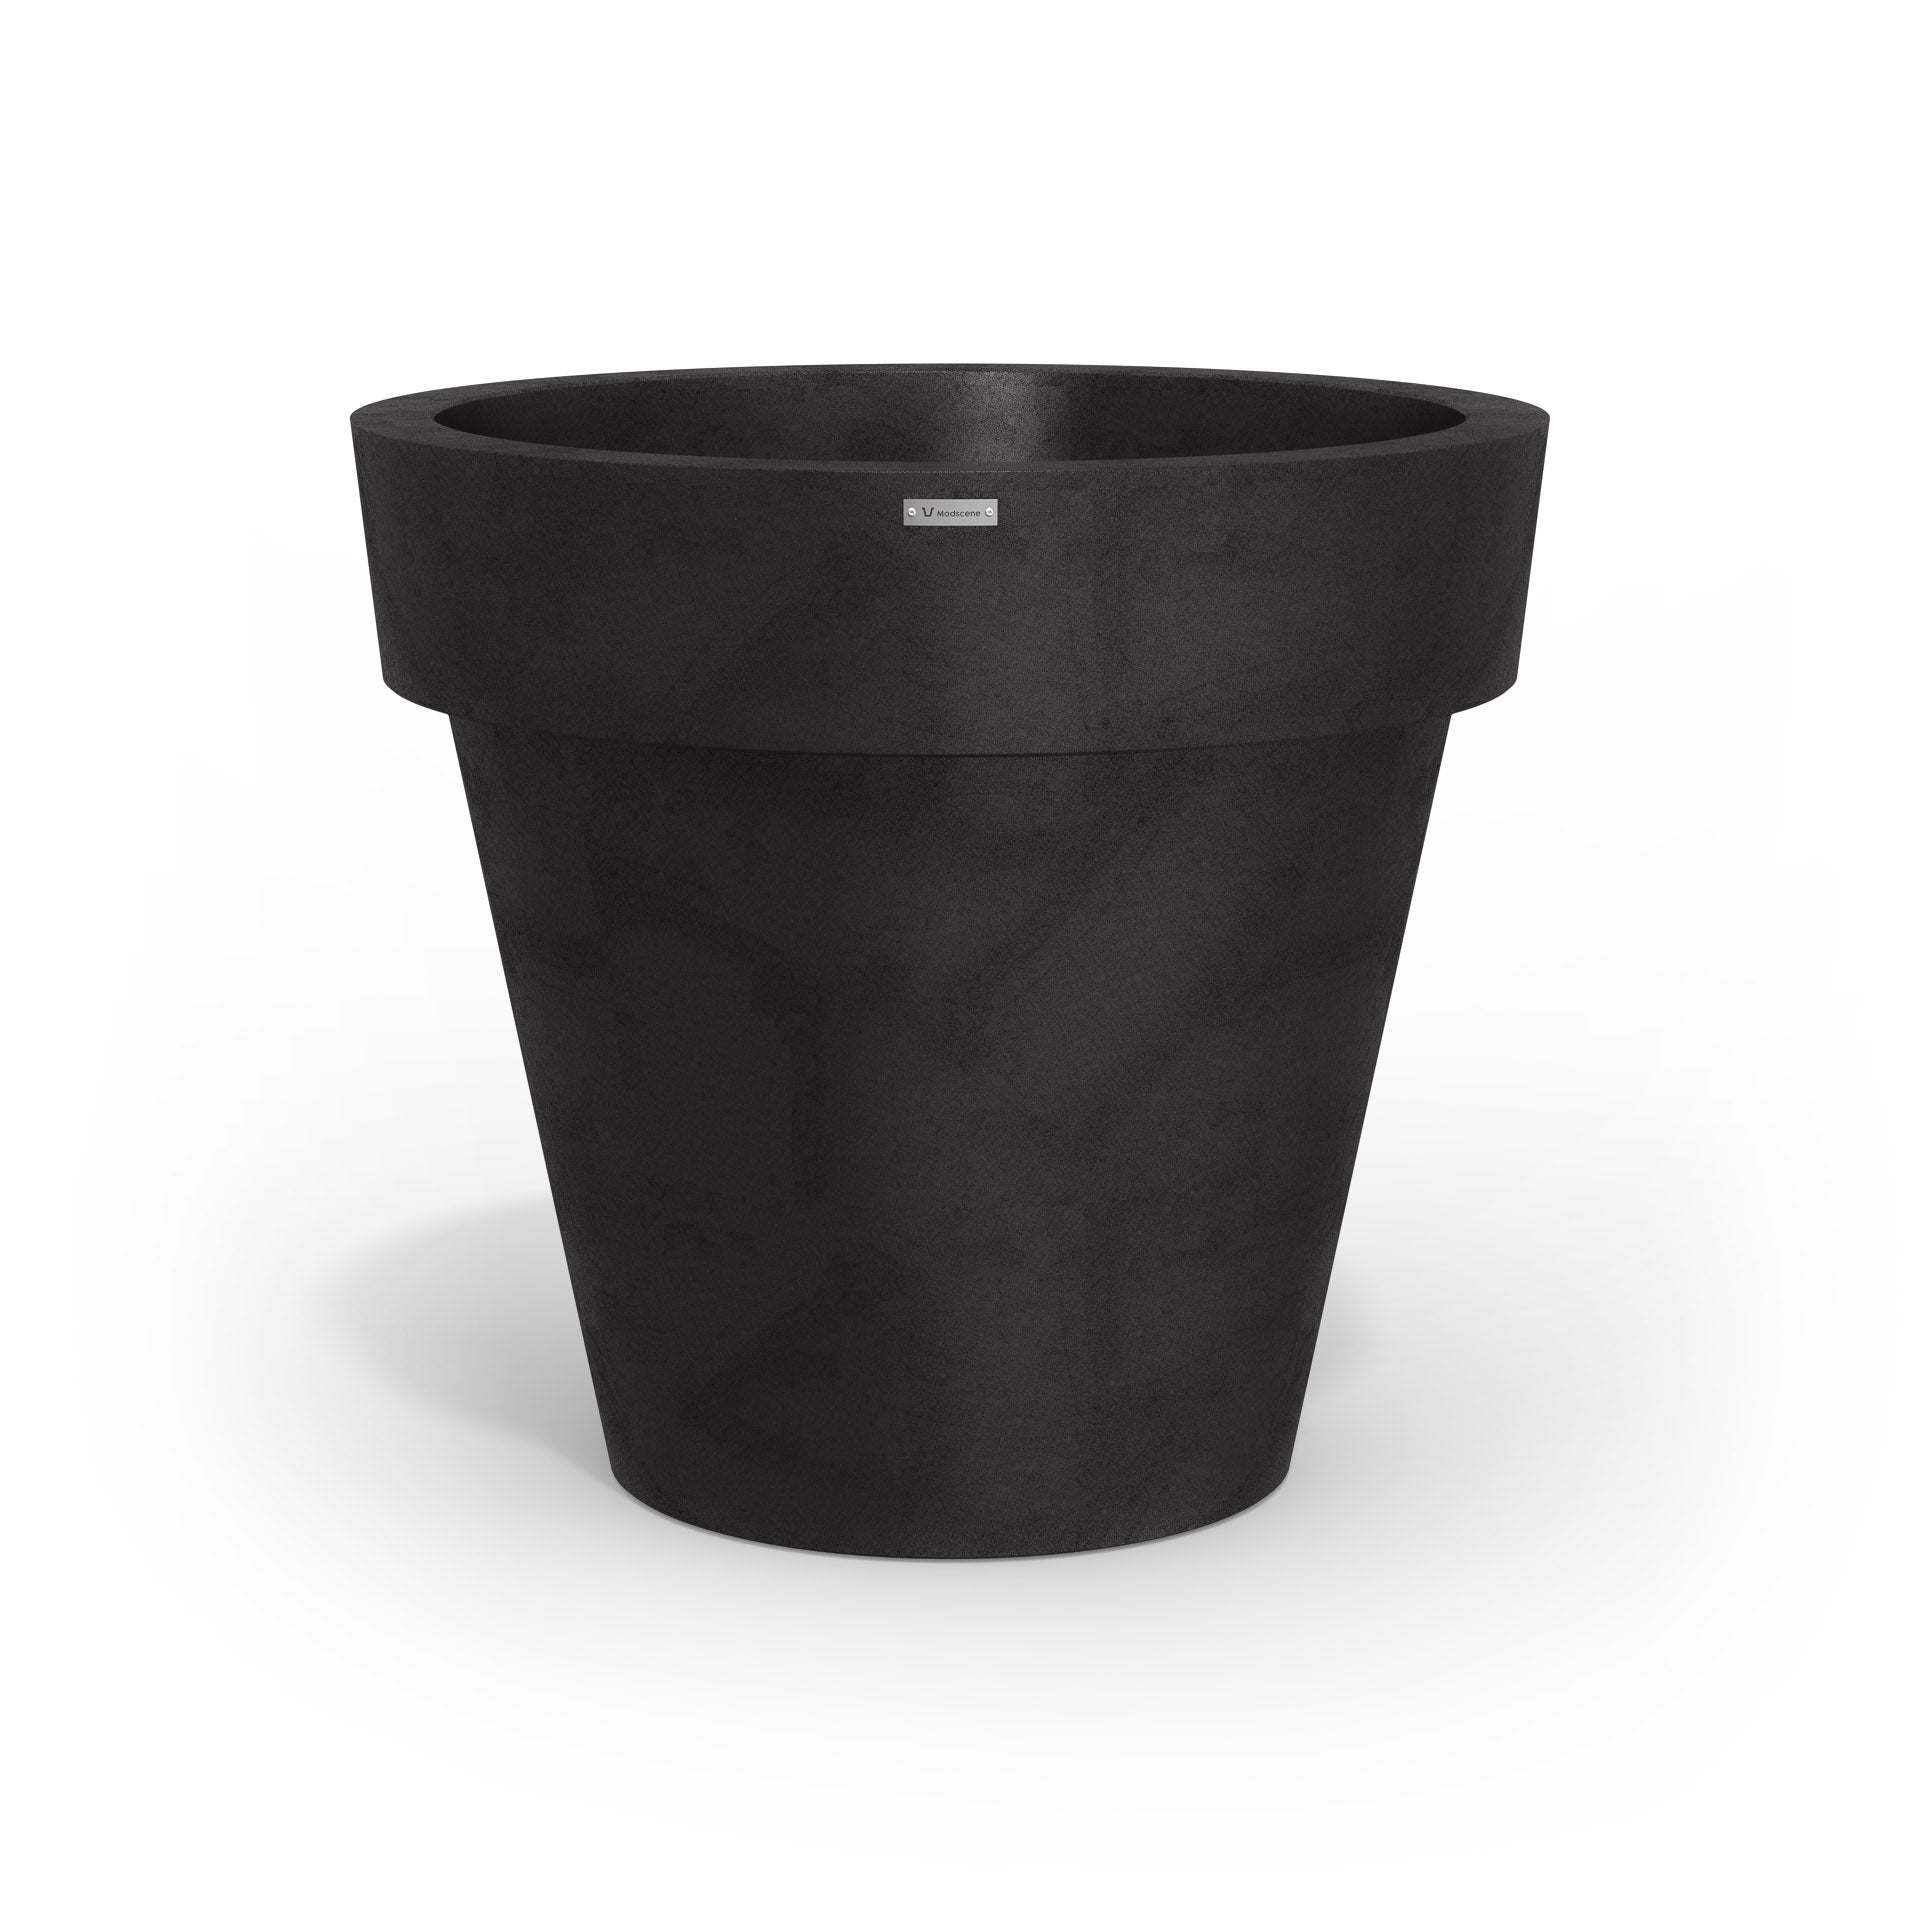 Black Modscene plastic planter pot with a concrete finish.